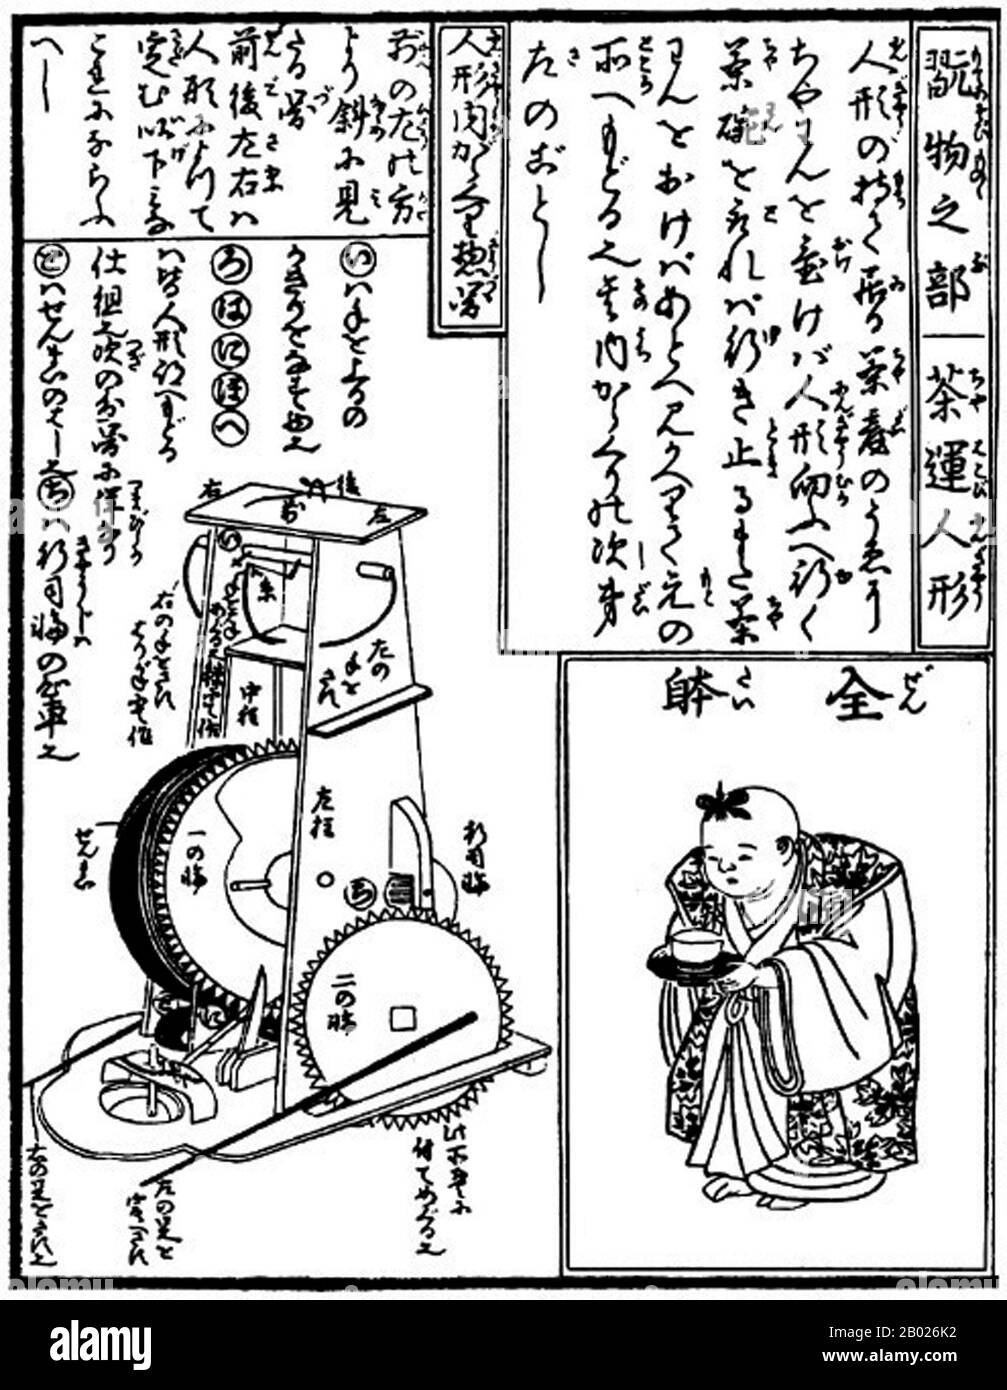 Karakuri-zui wurde von Hosokawa Hanzo Yorinao geschrieben und in der Edo-Zeit (1798) veröffentlicht. Diese, Japans ältestes Manuskript des Maschinenbaus, besteht aus drei Bänden. Sie wurden später in Osaka und Kyoto nachgedruckt. Das Kompendium beschreibt die Struktur und den Bauablauf von Uhren (wadokei, jp. 和時計) und automatisiert (Karakuri ningyō, jp. からくり人形) mechanische Puppen, und es erklärt nicht nur die Techniken, sondern auch den Geist der Herstellung dieser mechanischen Geräte. Stockfoto